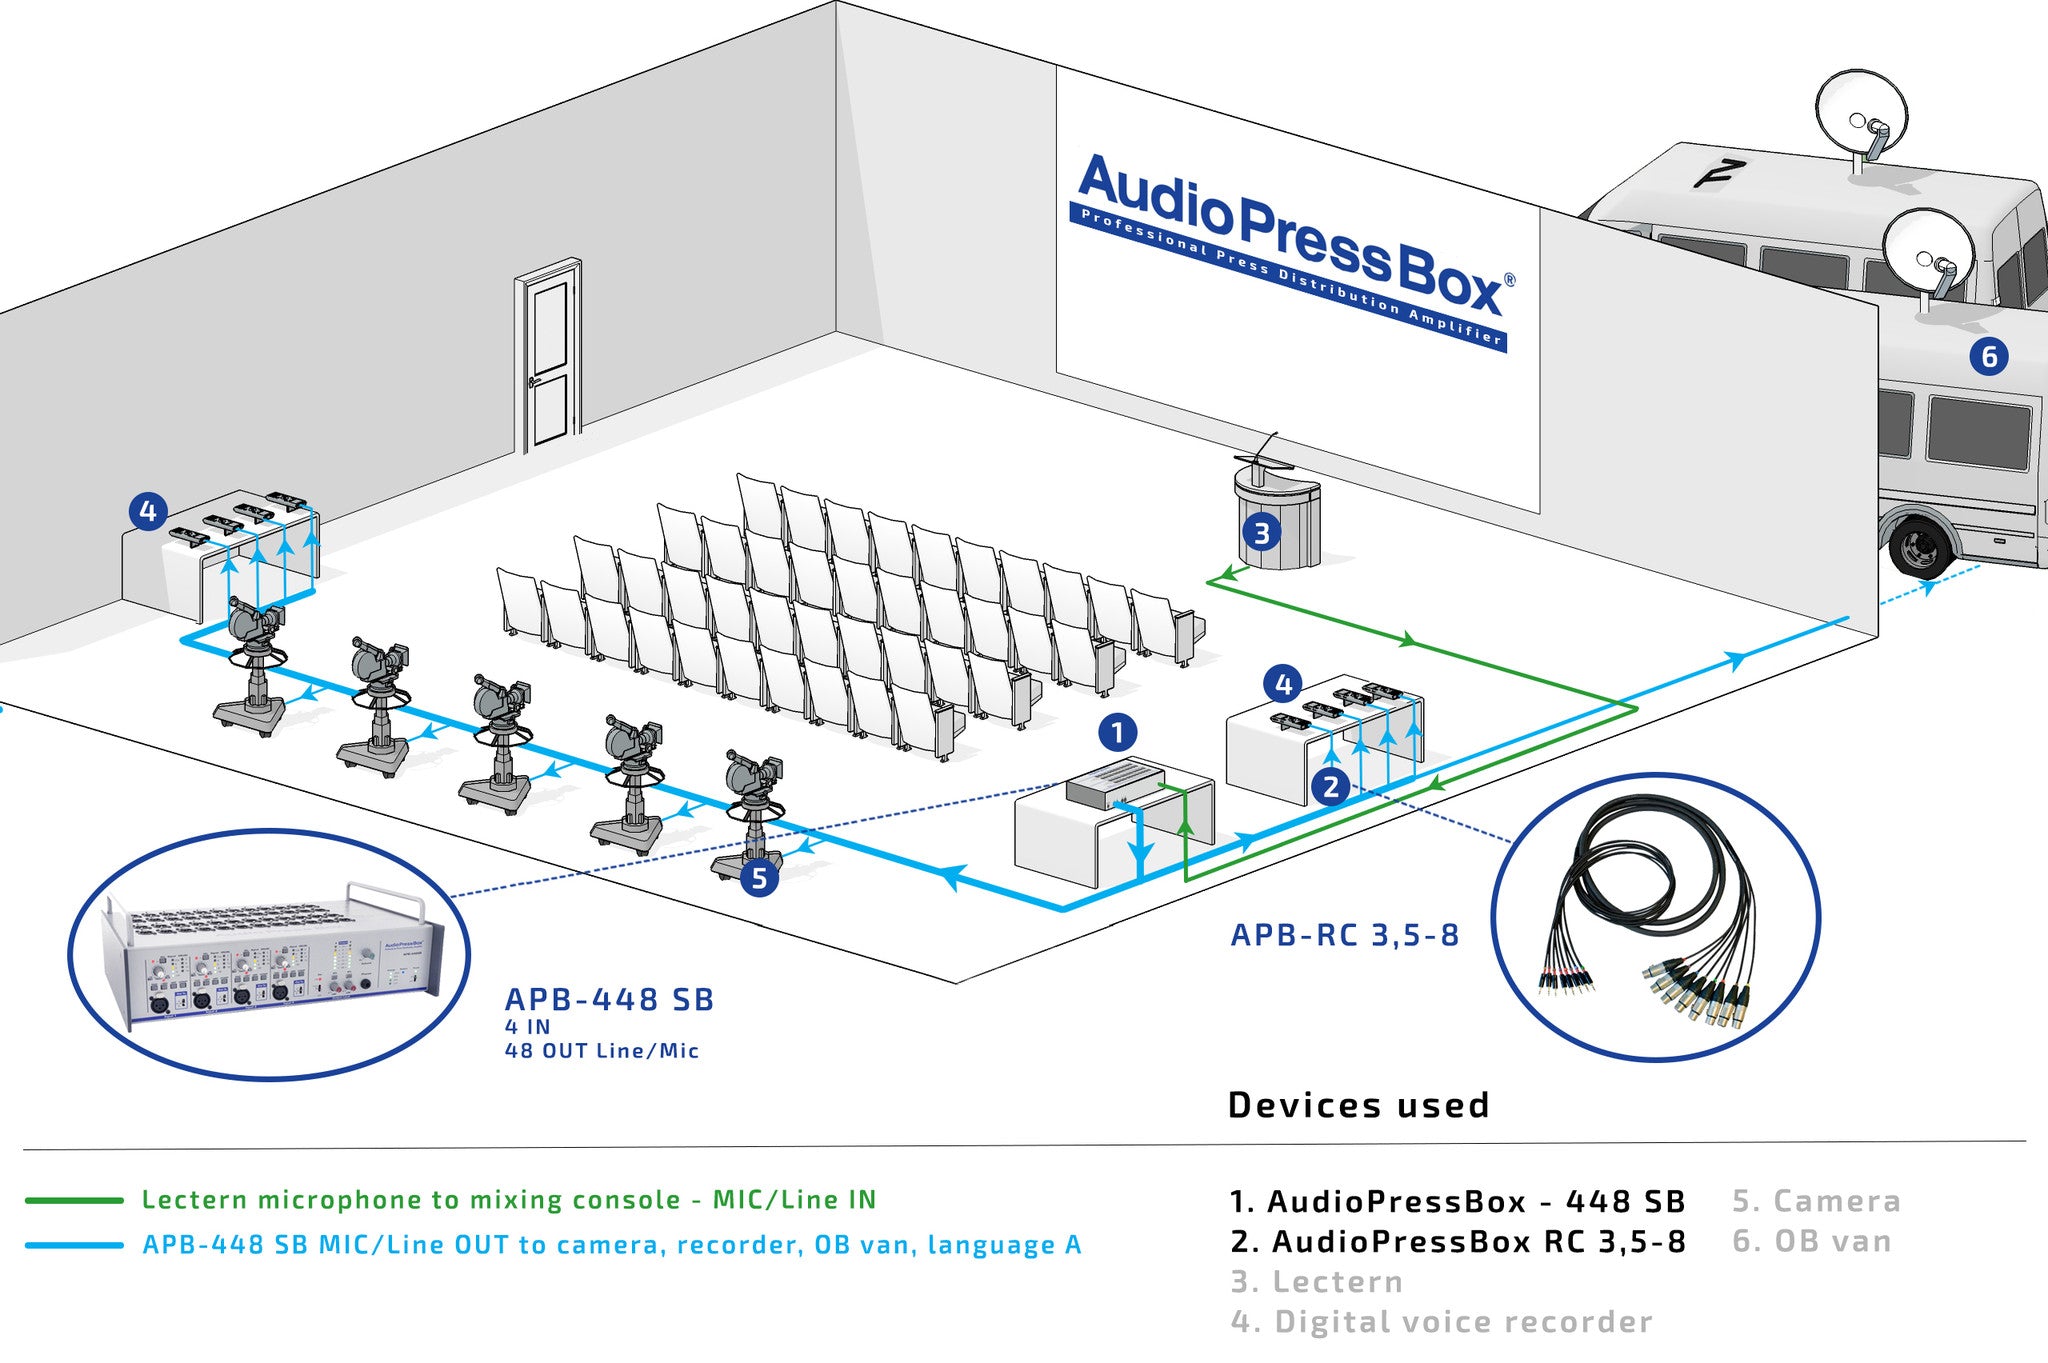 AudioPressBox, Mult Box, PressBox, Mult Box, Press Patch Box, Pressesplitter, APB-448 SB